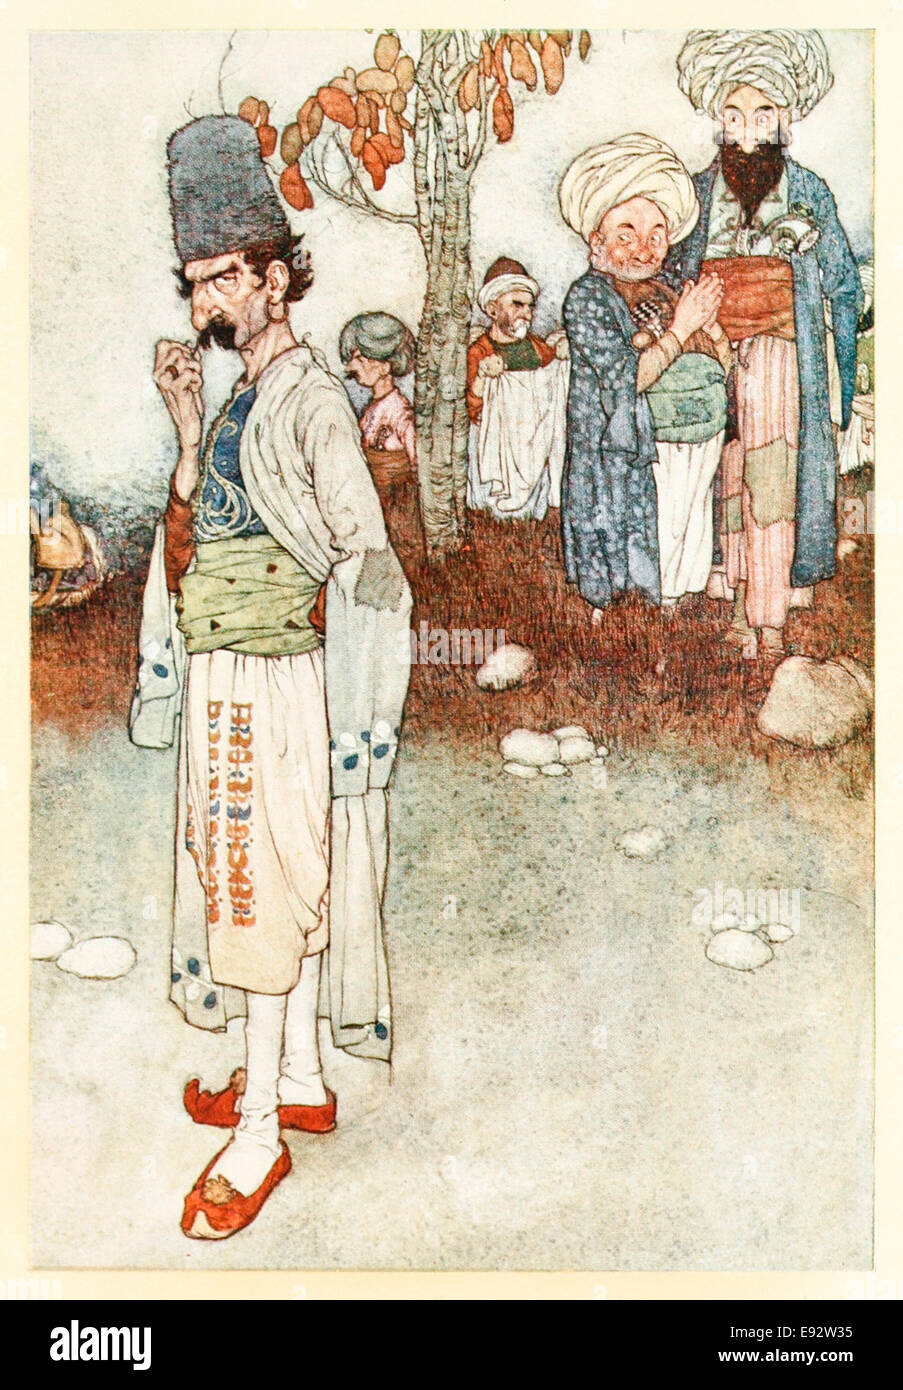 Morgiana portant le déguisement de la mort voleur - Edmund Dulac illustration de 'Ali Baba et les quarante voleurs' dans 'Stories de l'Arabian Nights'. Voir la description pour plus d'informations Banque D'Images